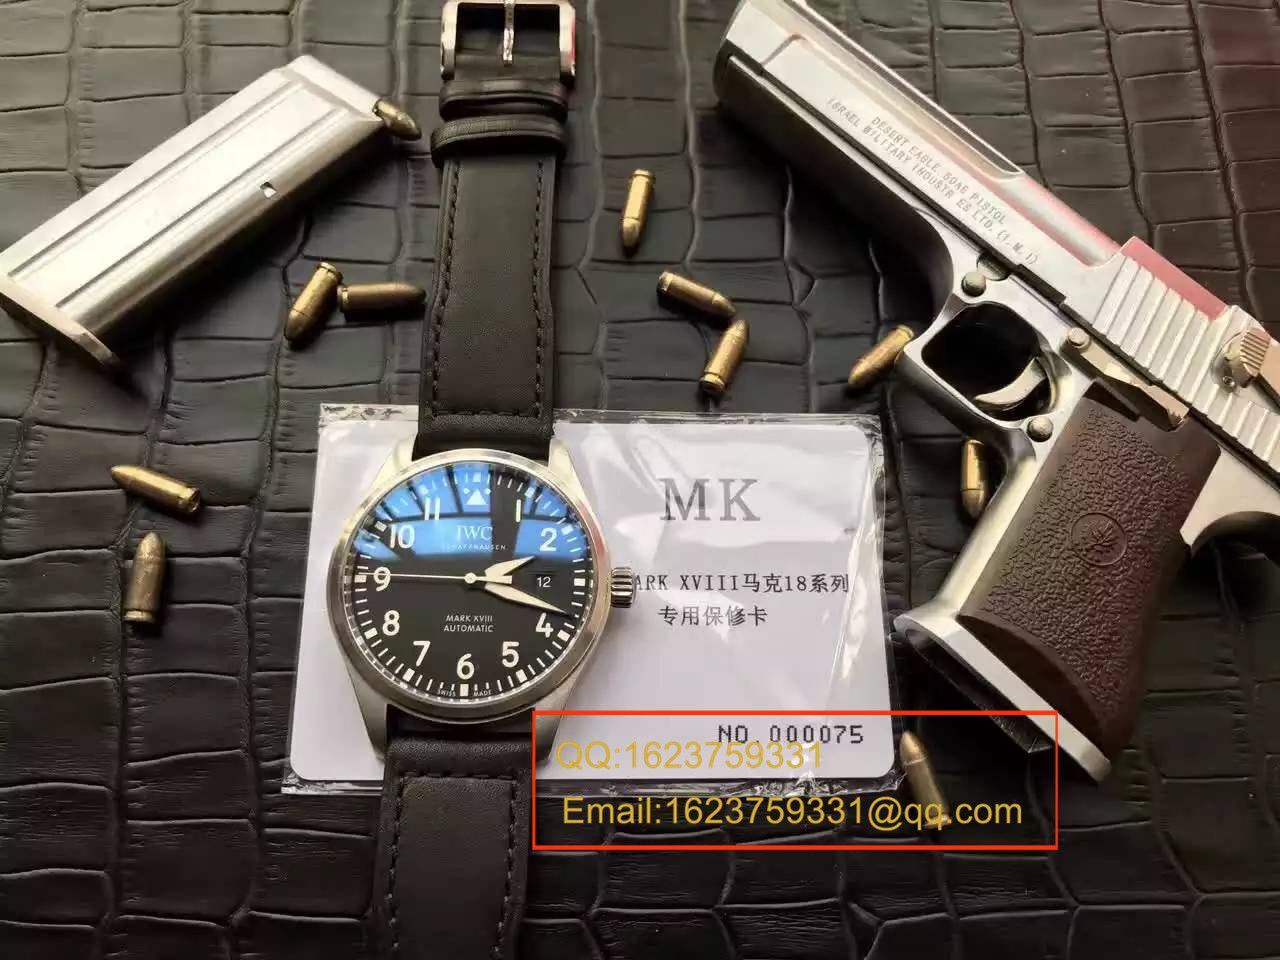 【独家视频测评MK厂超A精仿手表】万国飞行员马克十八飞行员腕表系列 IW327001腕表 / WG246